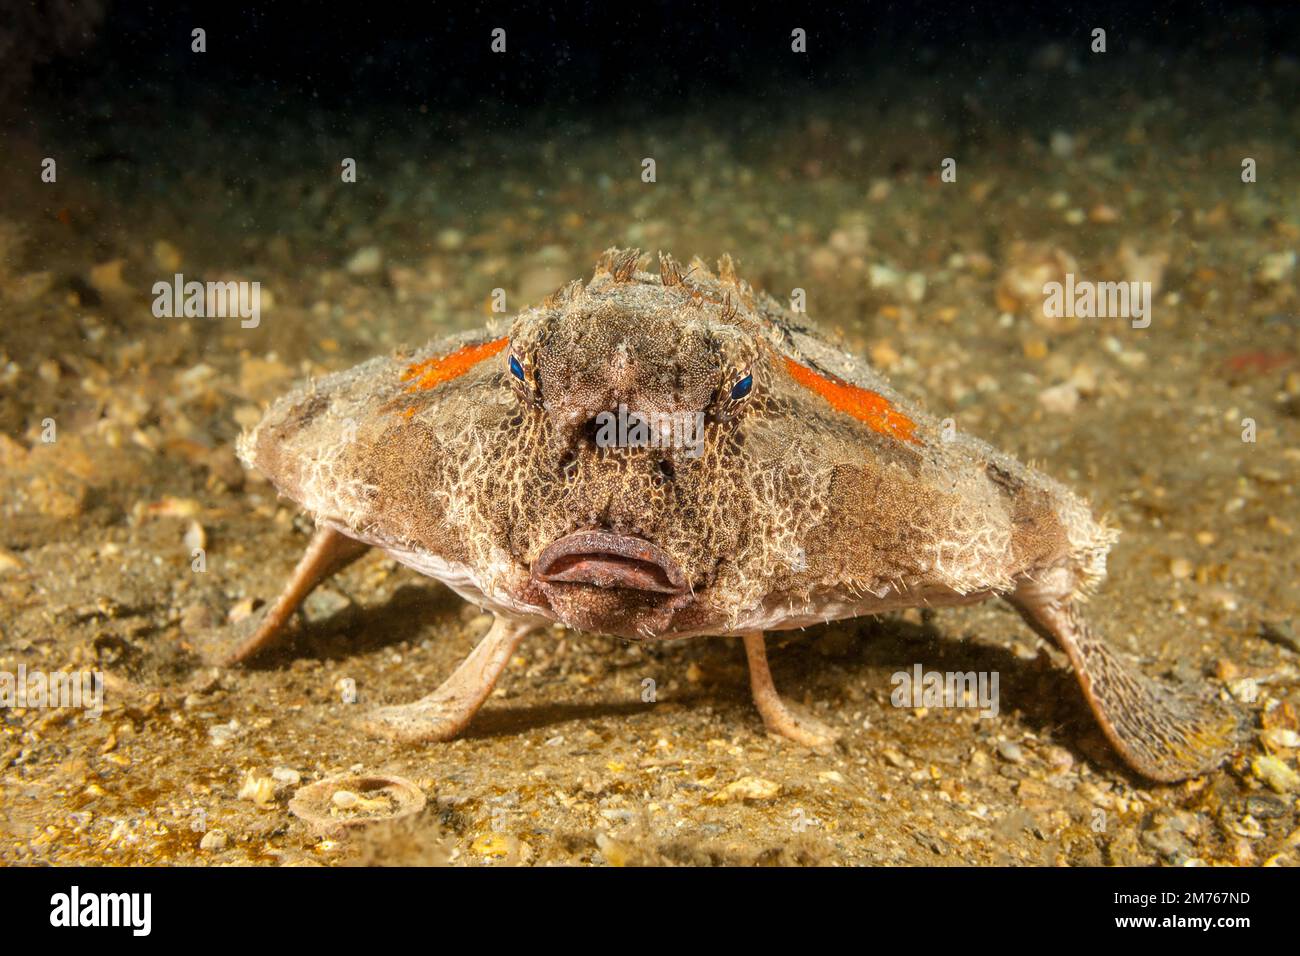 Il Polka-Dot batfish, Ogcocephalus radiatus, è anche conosciuto come batfish spotted e può raggiungere oltre un piede di lunghezza, Florida, USA. Foto Stock